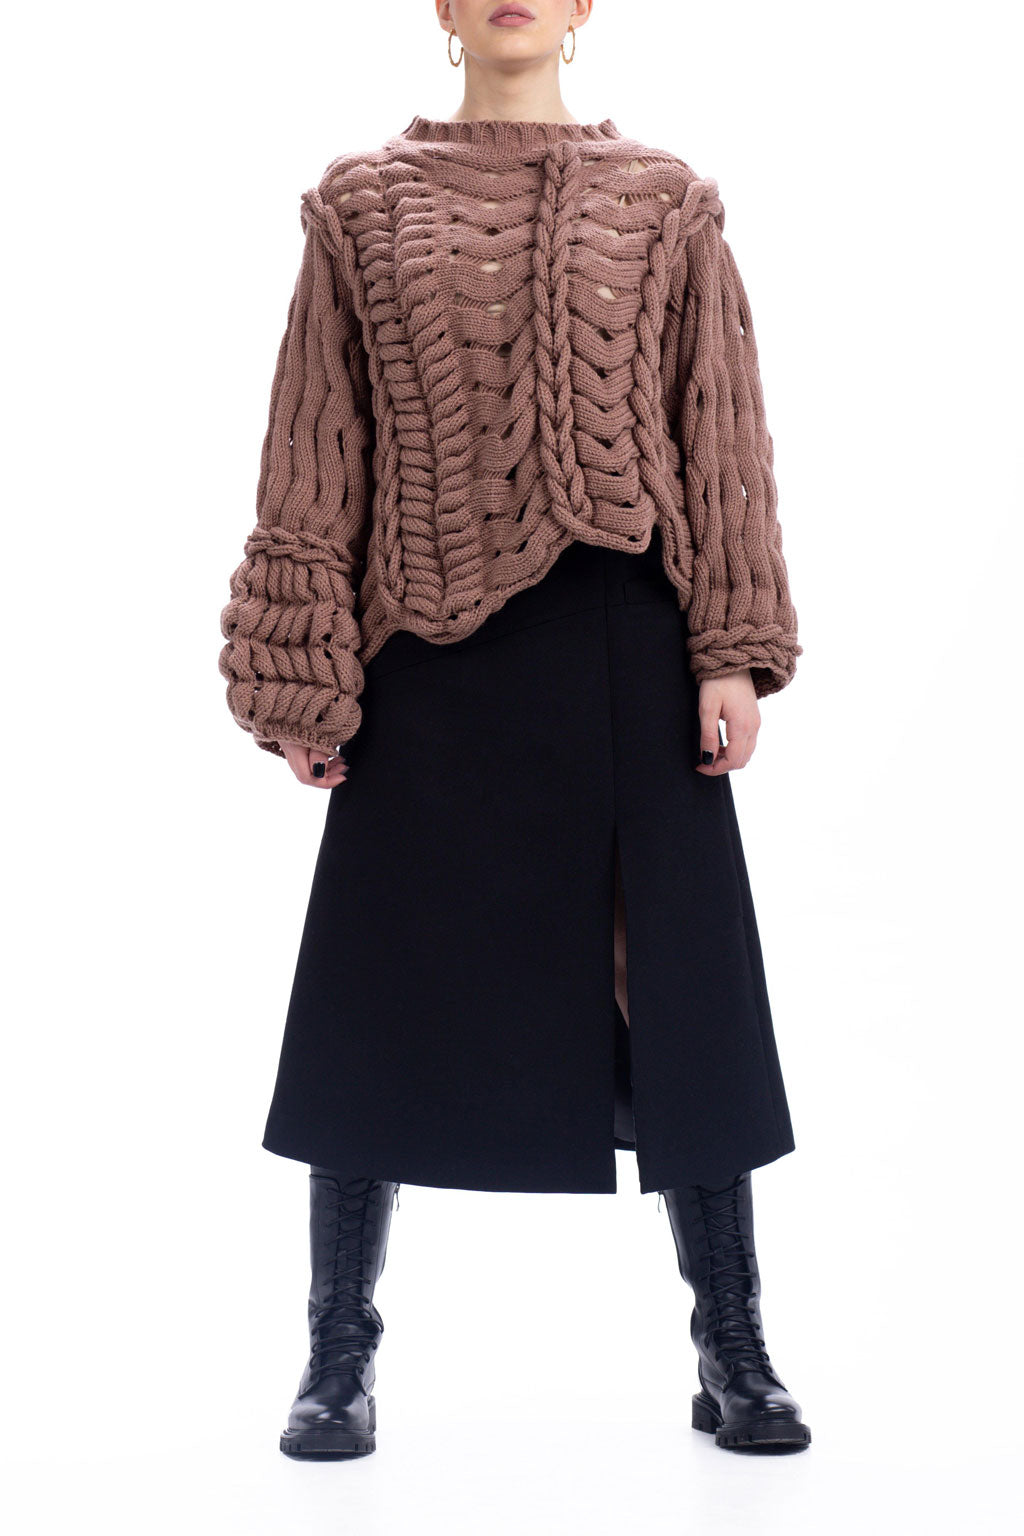 Wave Sweater in Dark Beige by Abôvian, Product type - Sweater, Designed by LOOM Weaving